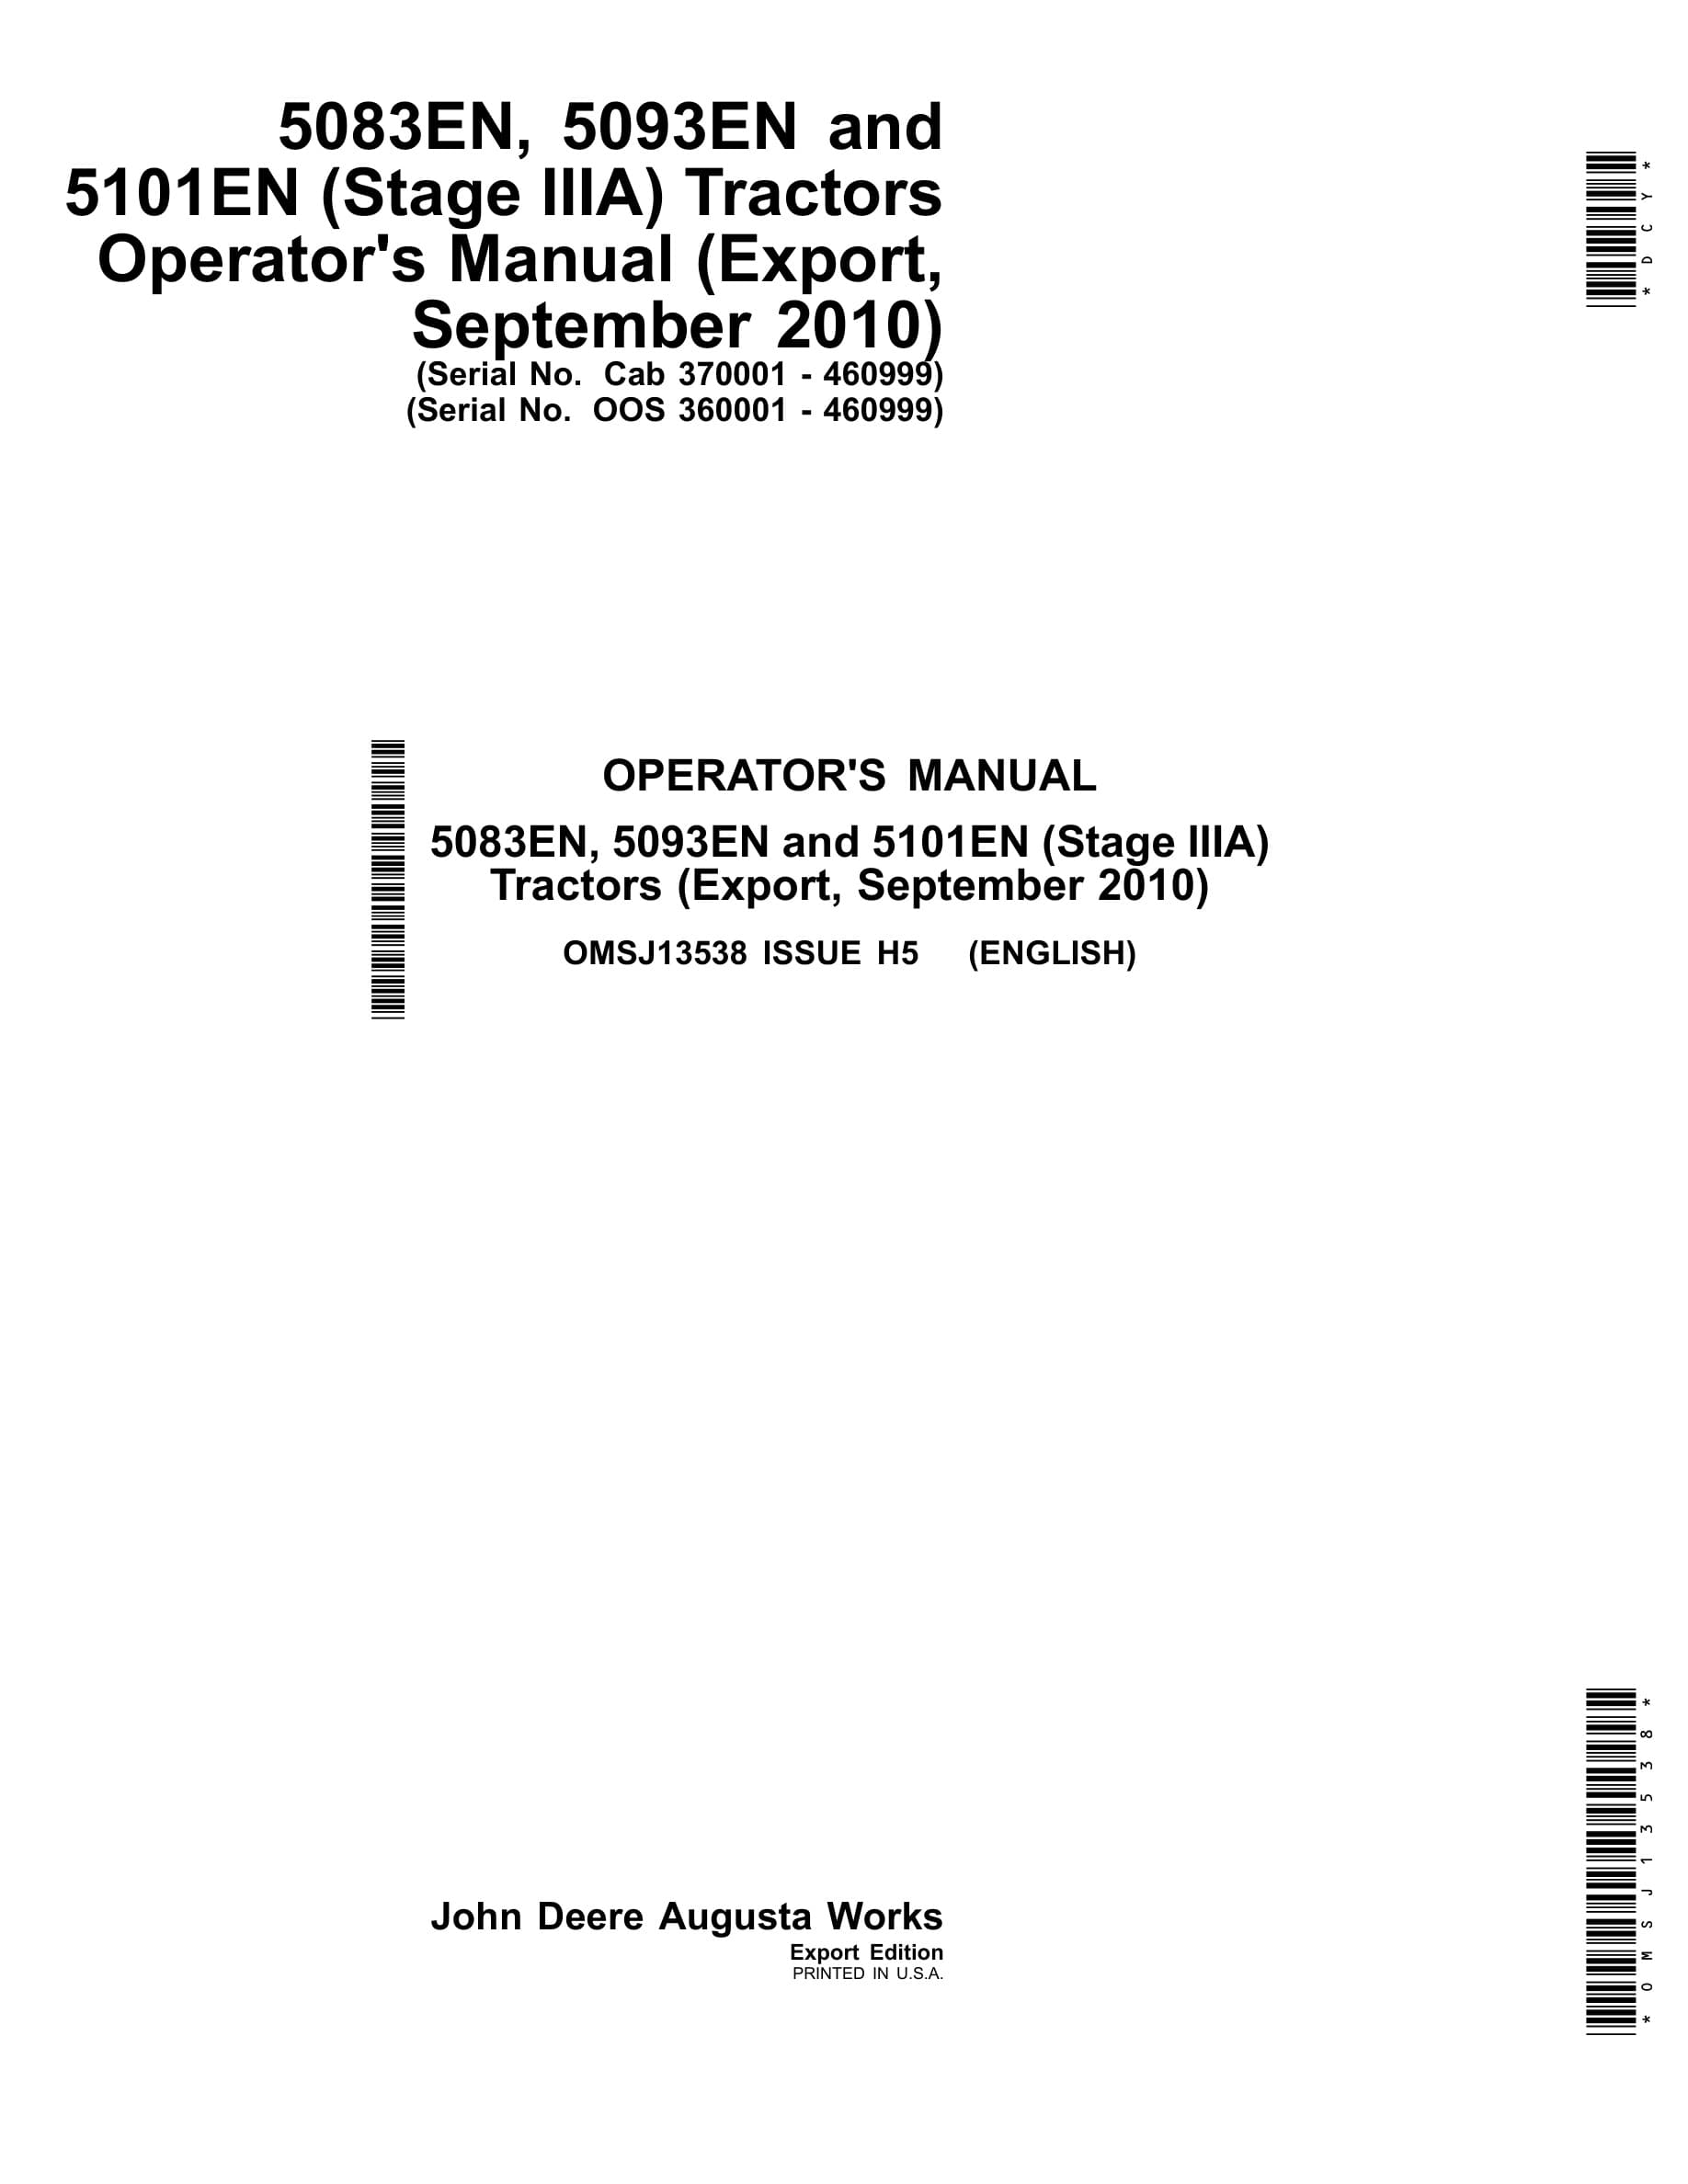 John Deere 5083en, 5093en And 5101en (stage Iiia) Tractors Operator Manuals OMSJ13538-1